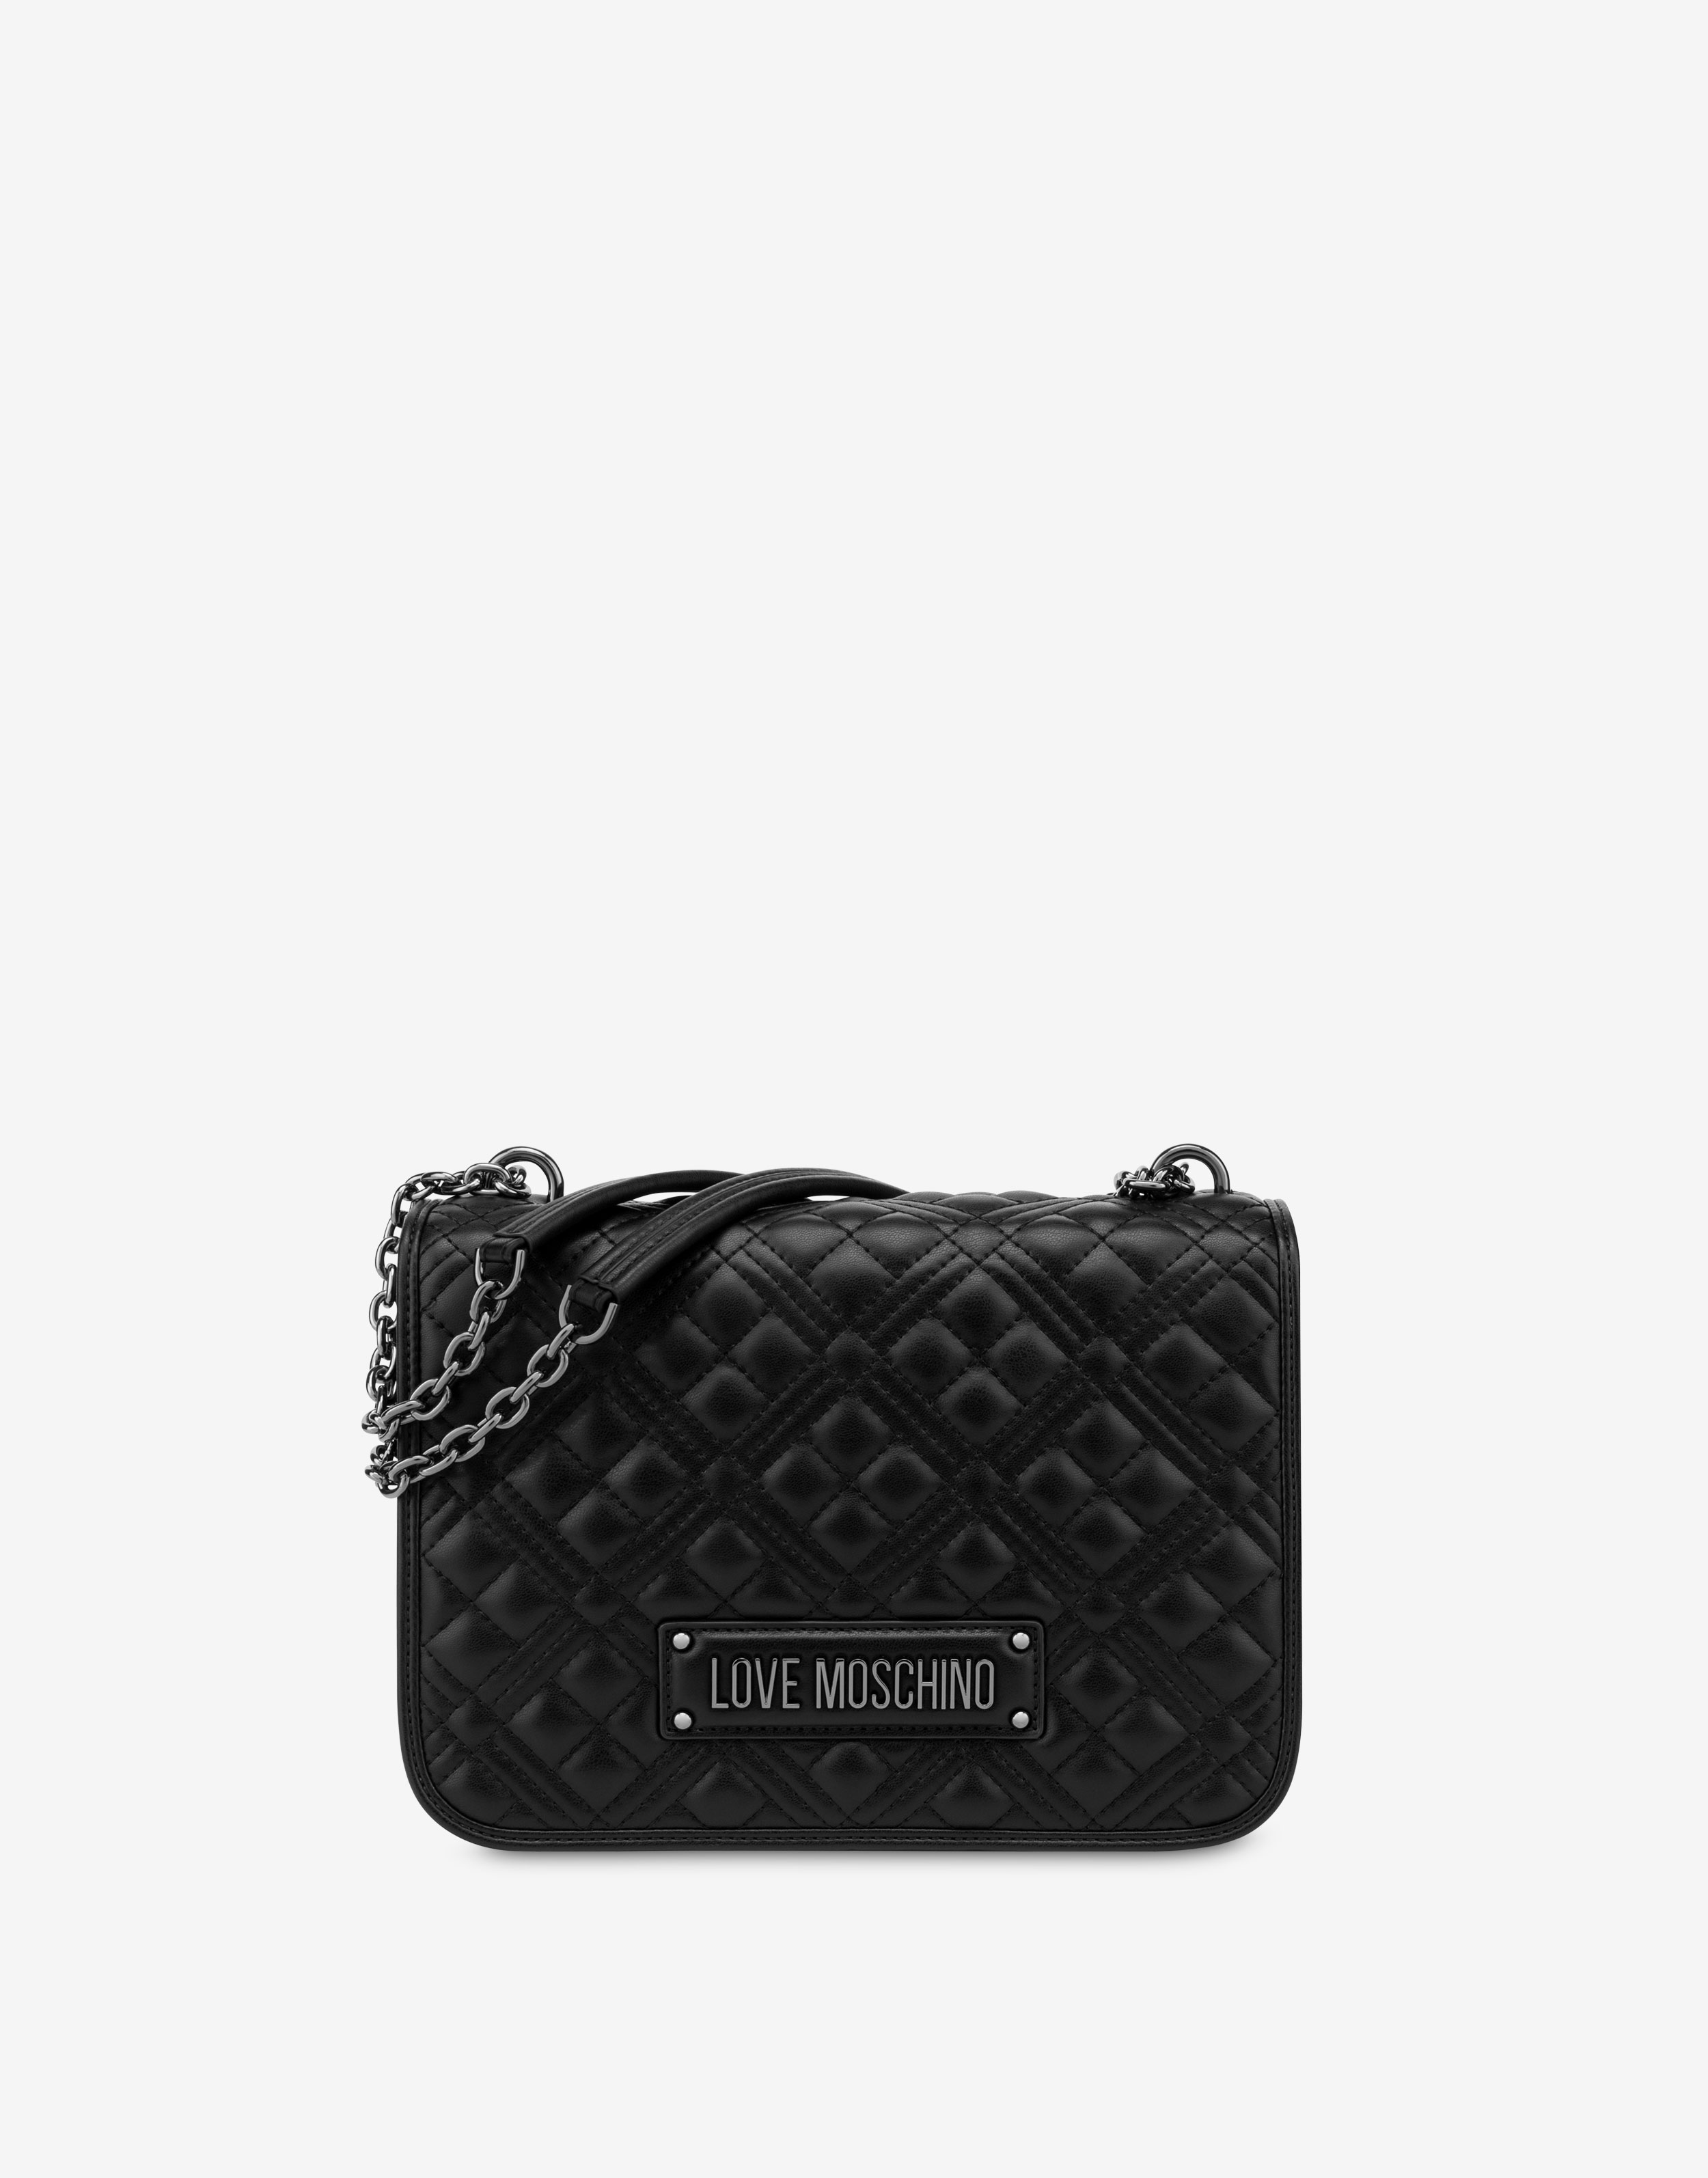 Handbags Moschino, Style code: 7633-8213-1555 | Moschino backpack, Moschino  bag, Moschino